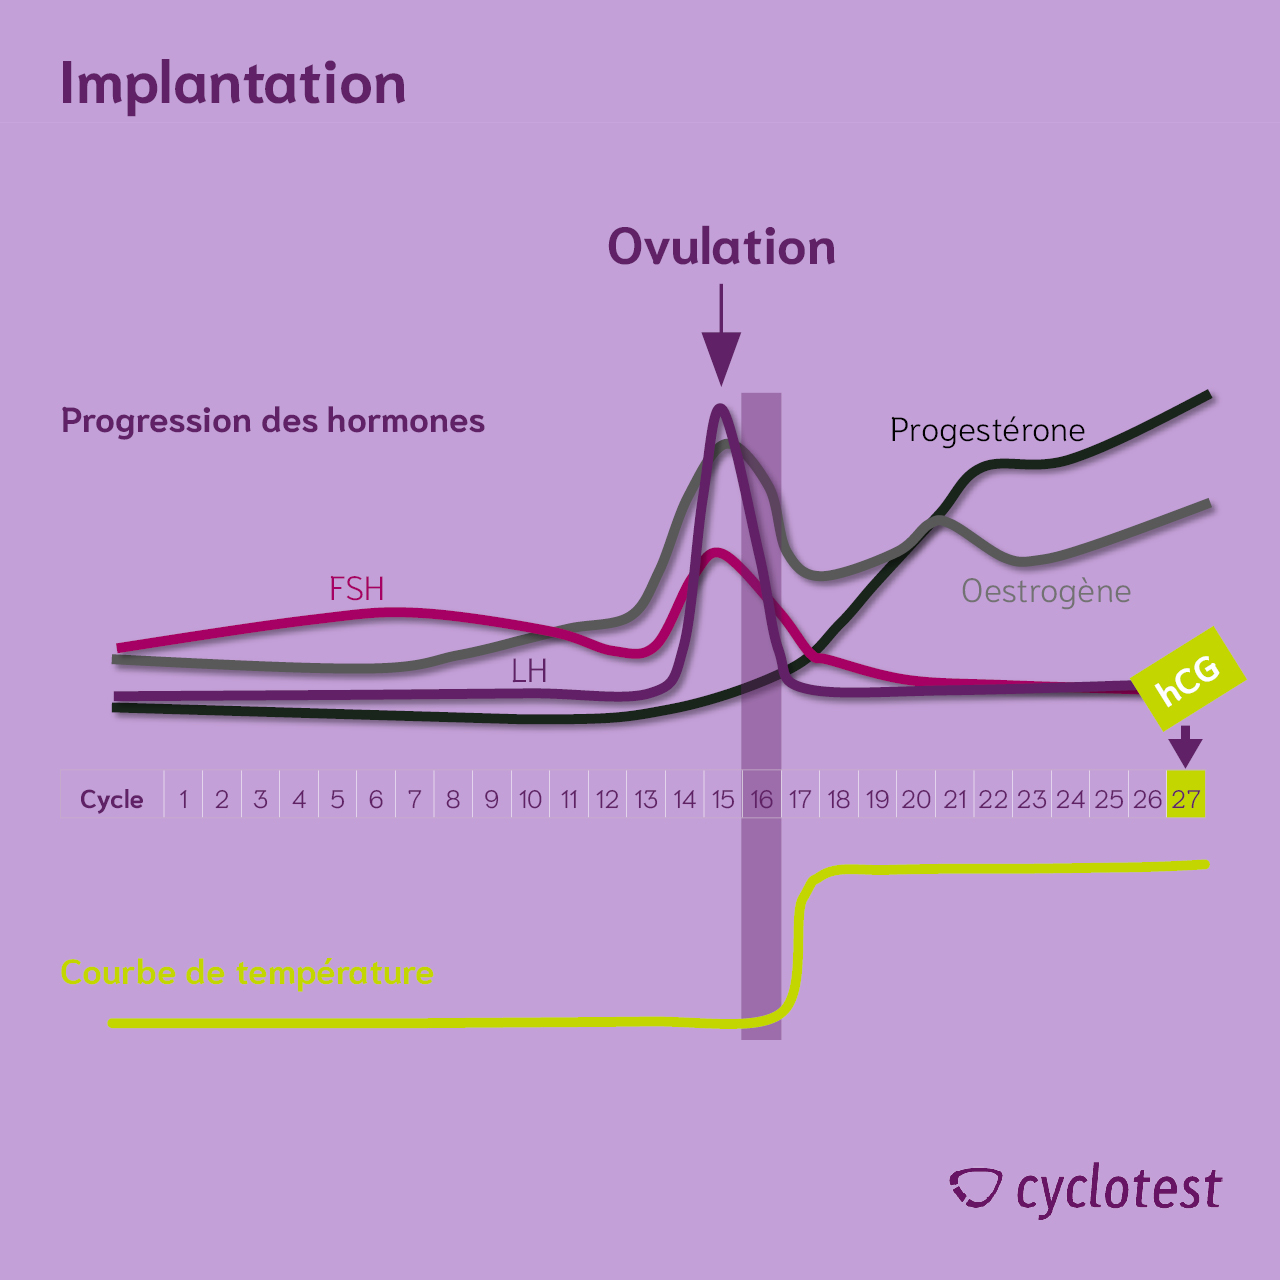 Progression du cycle pendant l'implantation | Graphique : © cyclotest